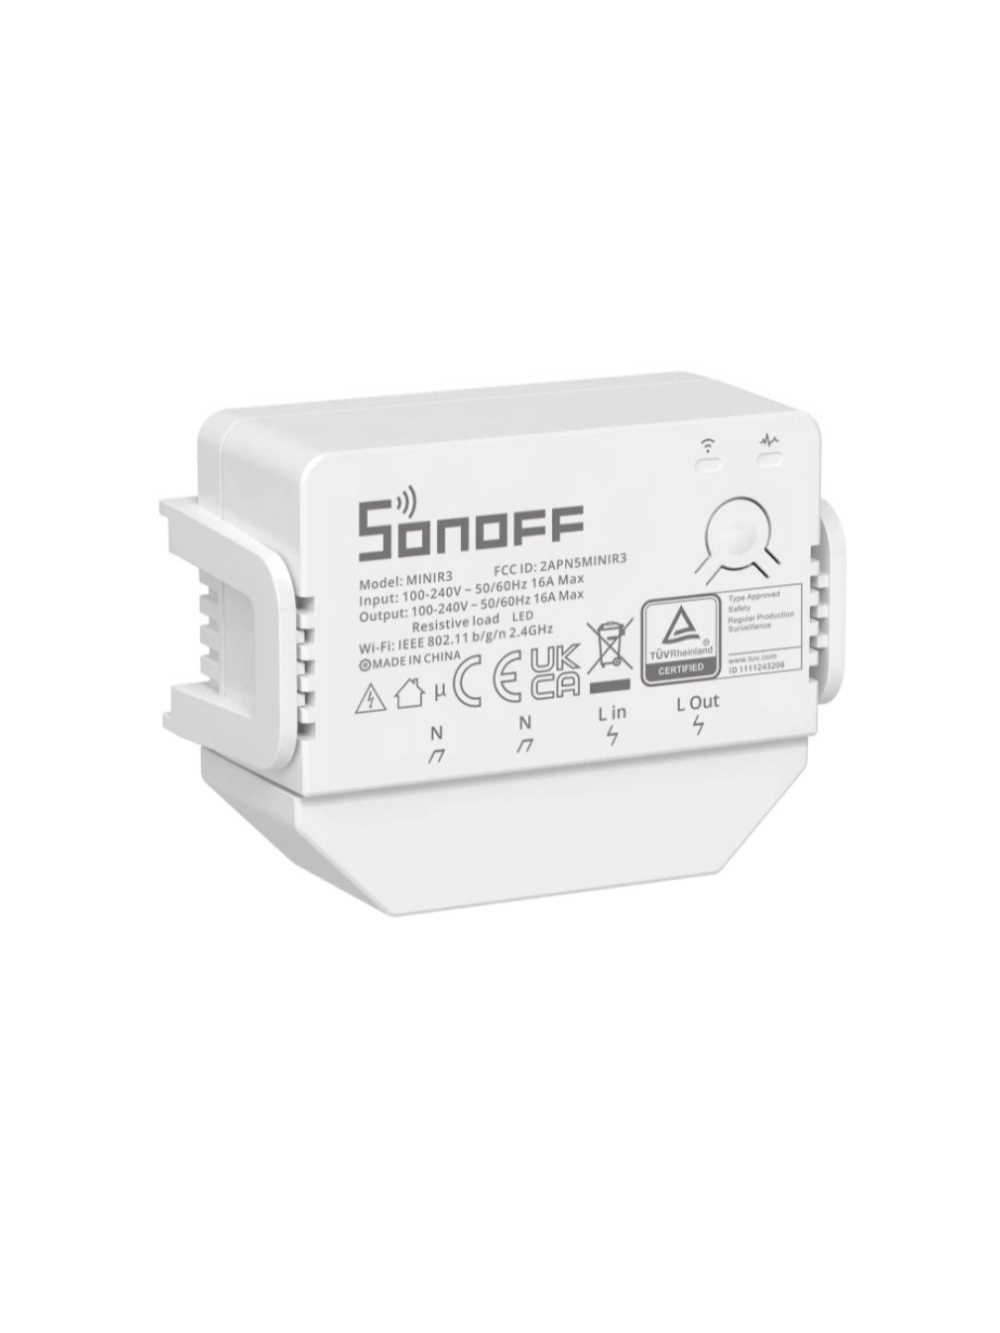 SONOFF MINI R3 Smart Switch